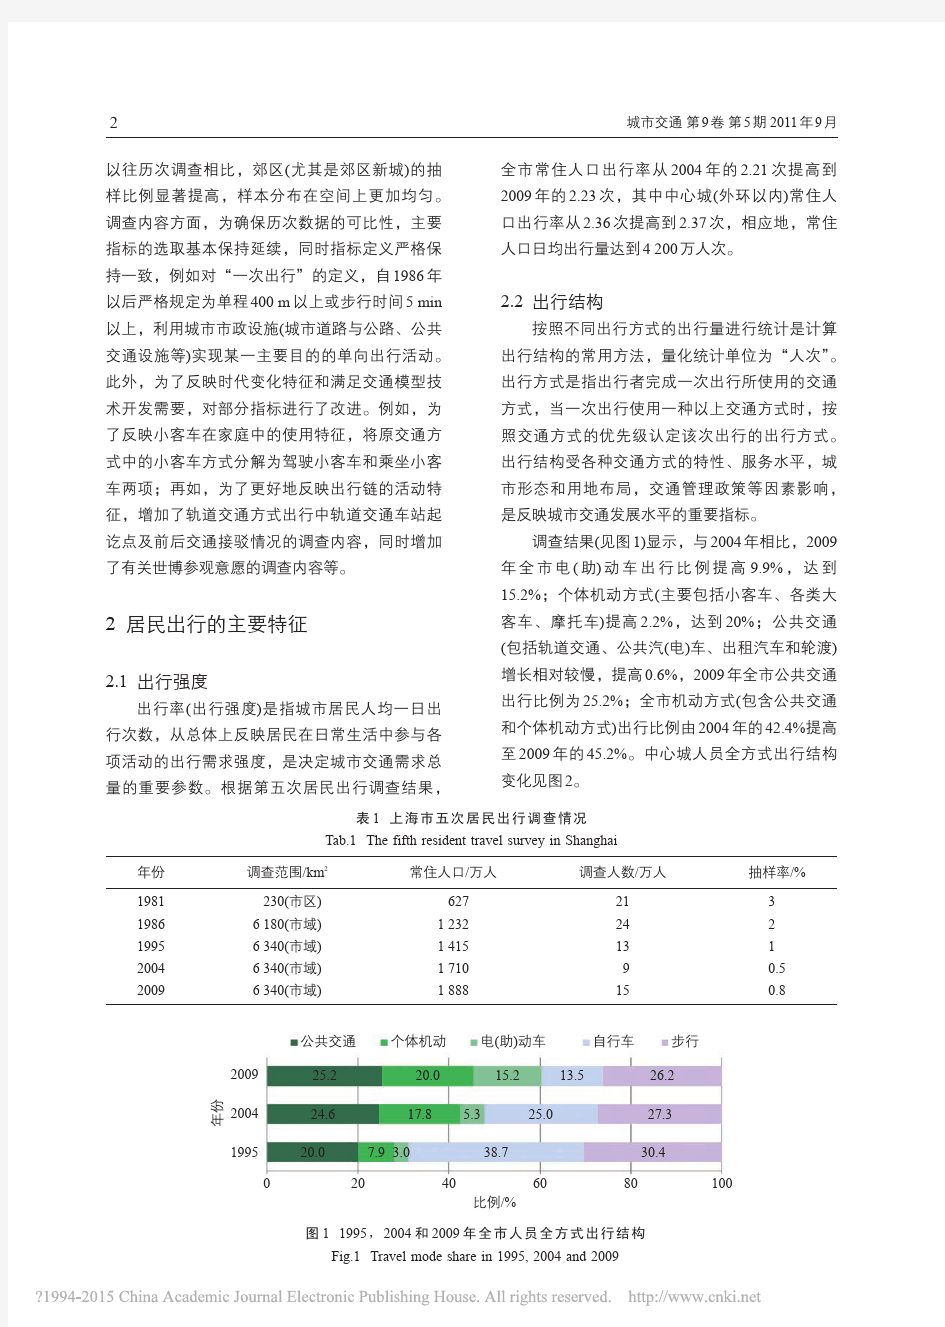 上海市第五次居民出行调查与交通特征研究_陆锡明